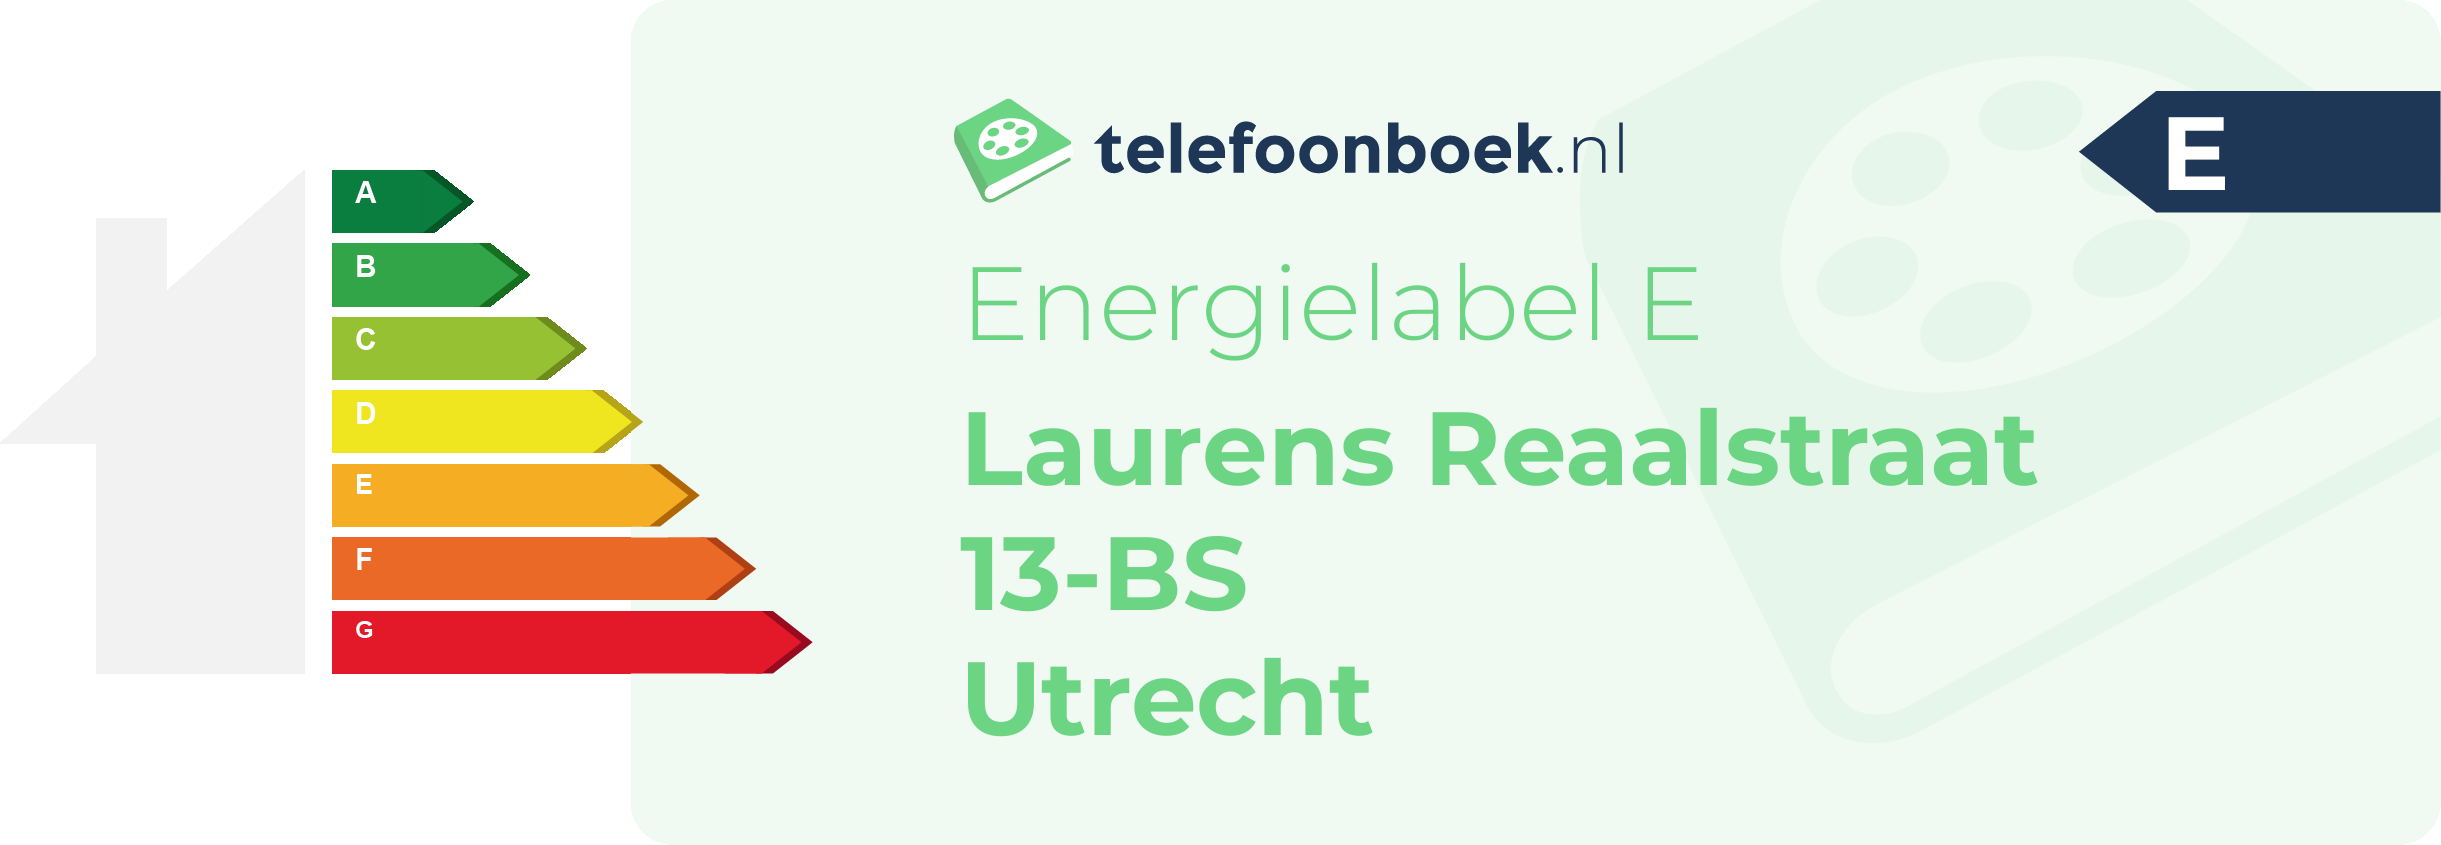 Energielabel Laurens Reaalstraat 13-BS Utrecht